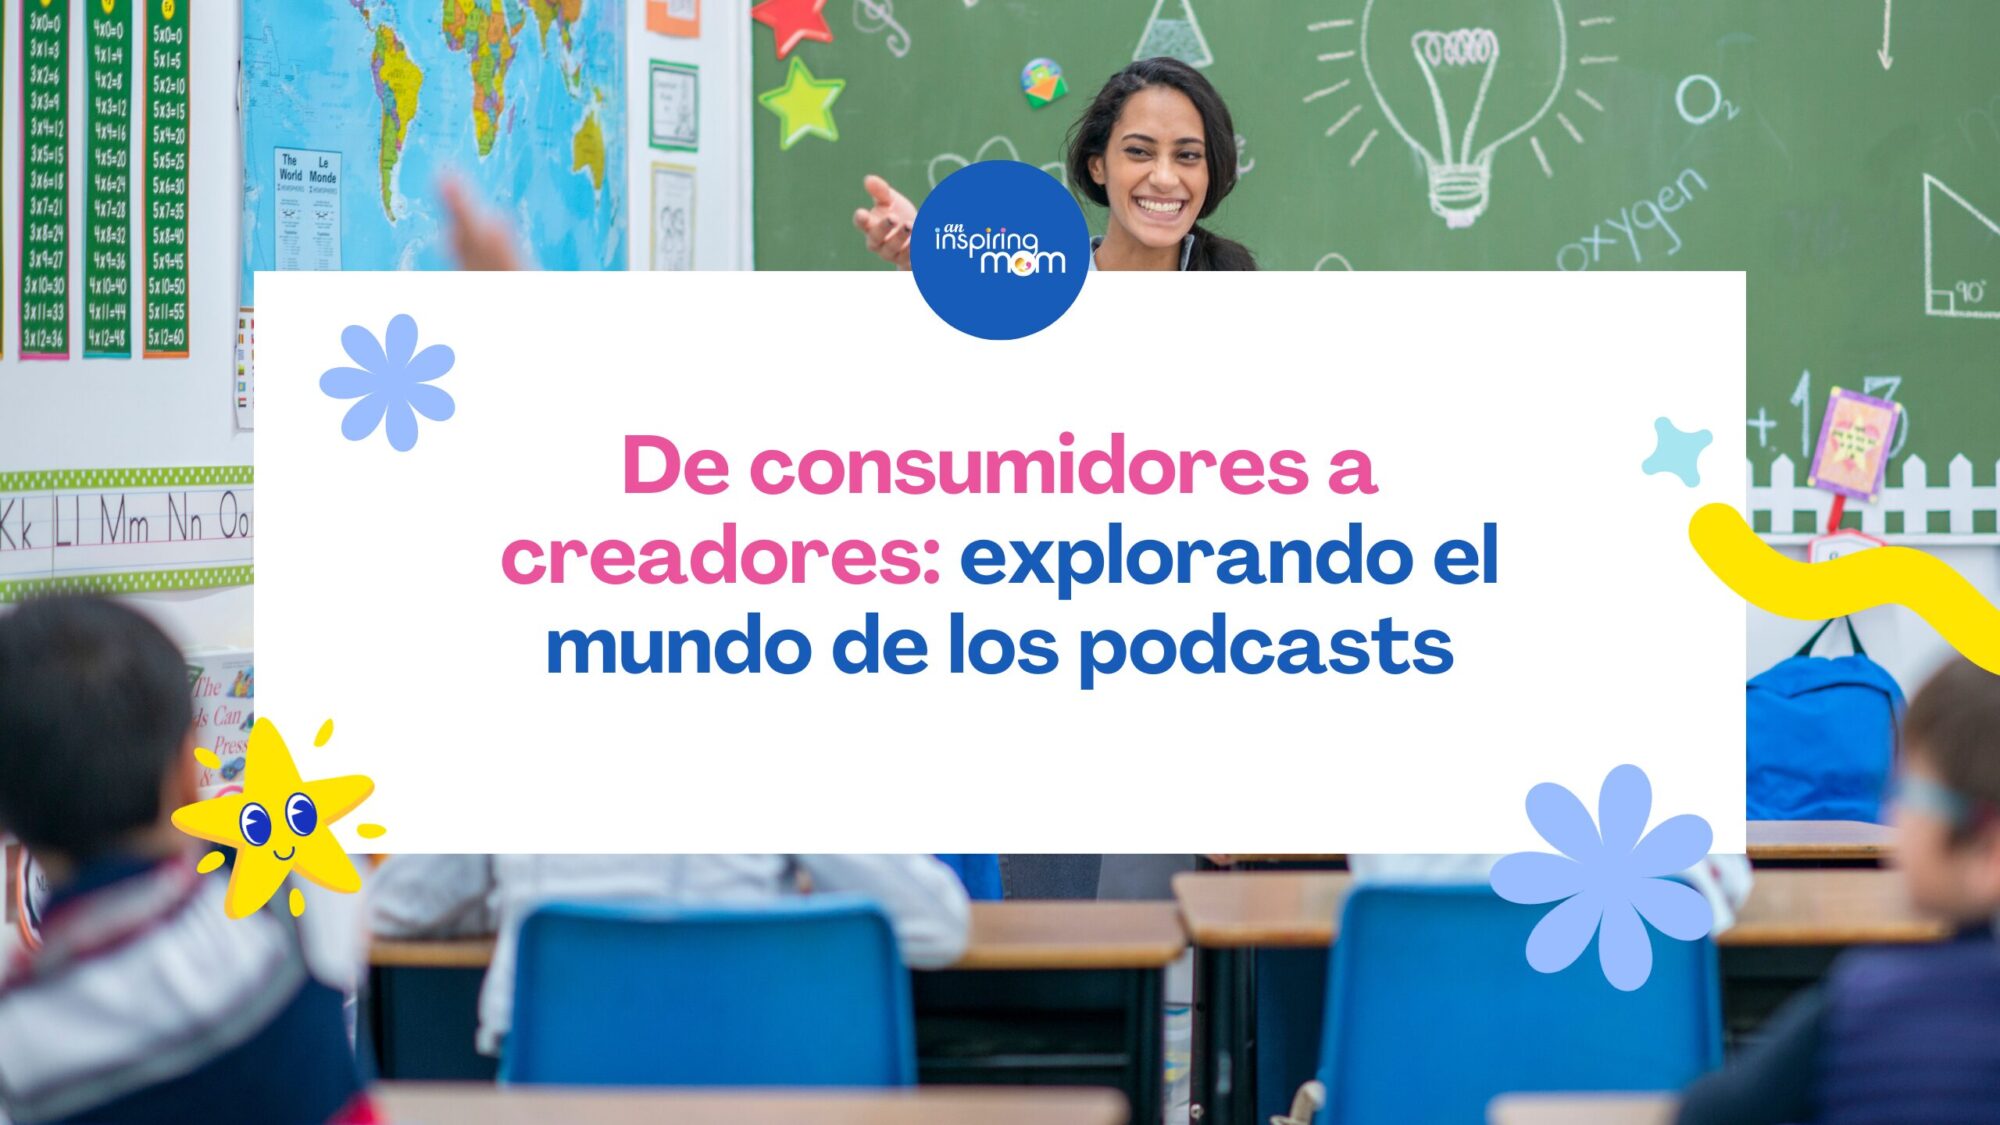 De consumidores a creadores explorando el mundo de los podcasts (2)